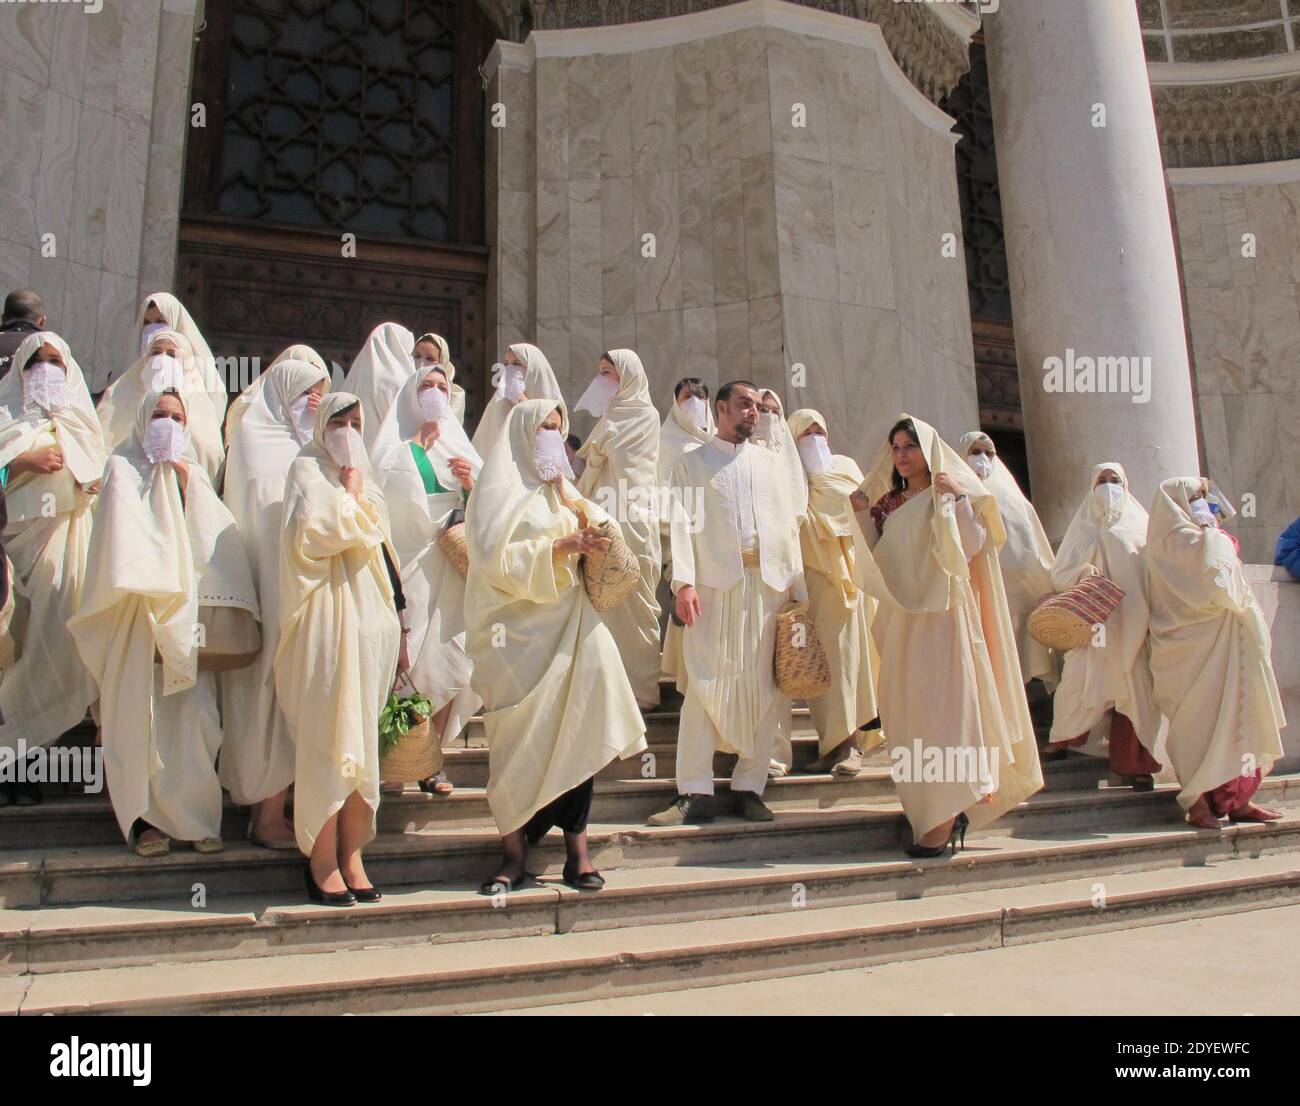 Le donne algerine che indossano i loro costumi islamici tradizionali  partecipano ad un rally che segna l'inizio della primavera il 21 marzo 2013  ad Algeri, in Algeria. Gli algerini si riuniscono per